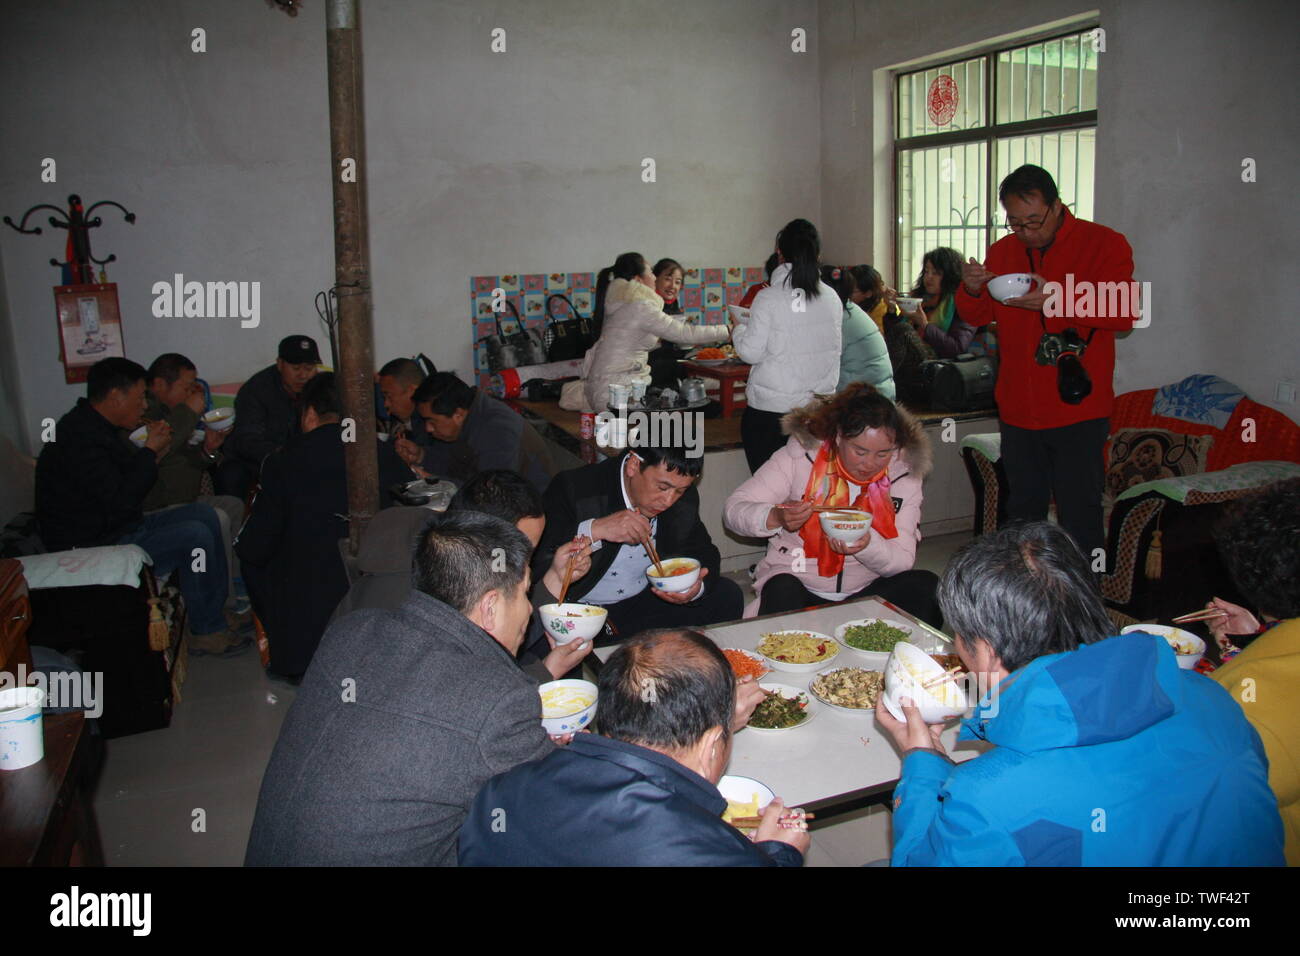 Il 18 novembre 2017, la gente di città nel distretto Maiji, Tianshui Città, Provincia di Gansu, è andato alla campagna insieme, sat in terra bollente kang nella loro città natale, cuocere una lattina di tè, mangiato una ciotola di spruzzato a caldo a base di noodle di riso, e considerare questa come la nostalgia. Solo in questo modo, di andare per la campagna a mangiare riso in inverno è diventata anche una fonte di turismo e svago per la gente di città, e inoltre ha vissuto l'economia rurale e della cultura. Foto Stock